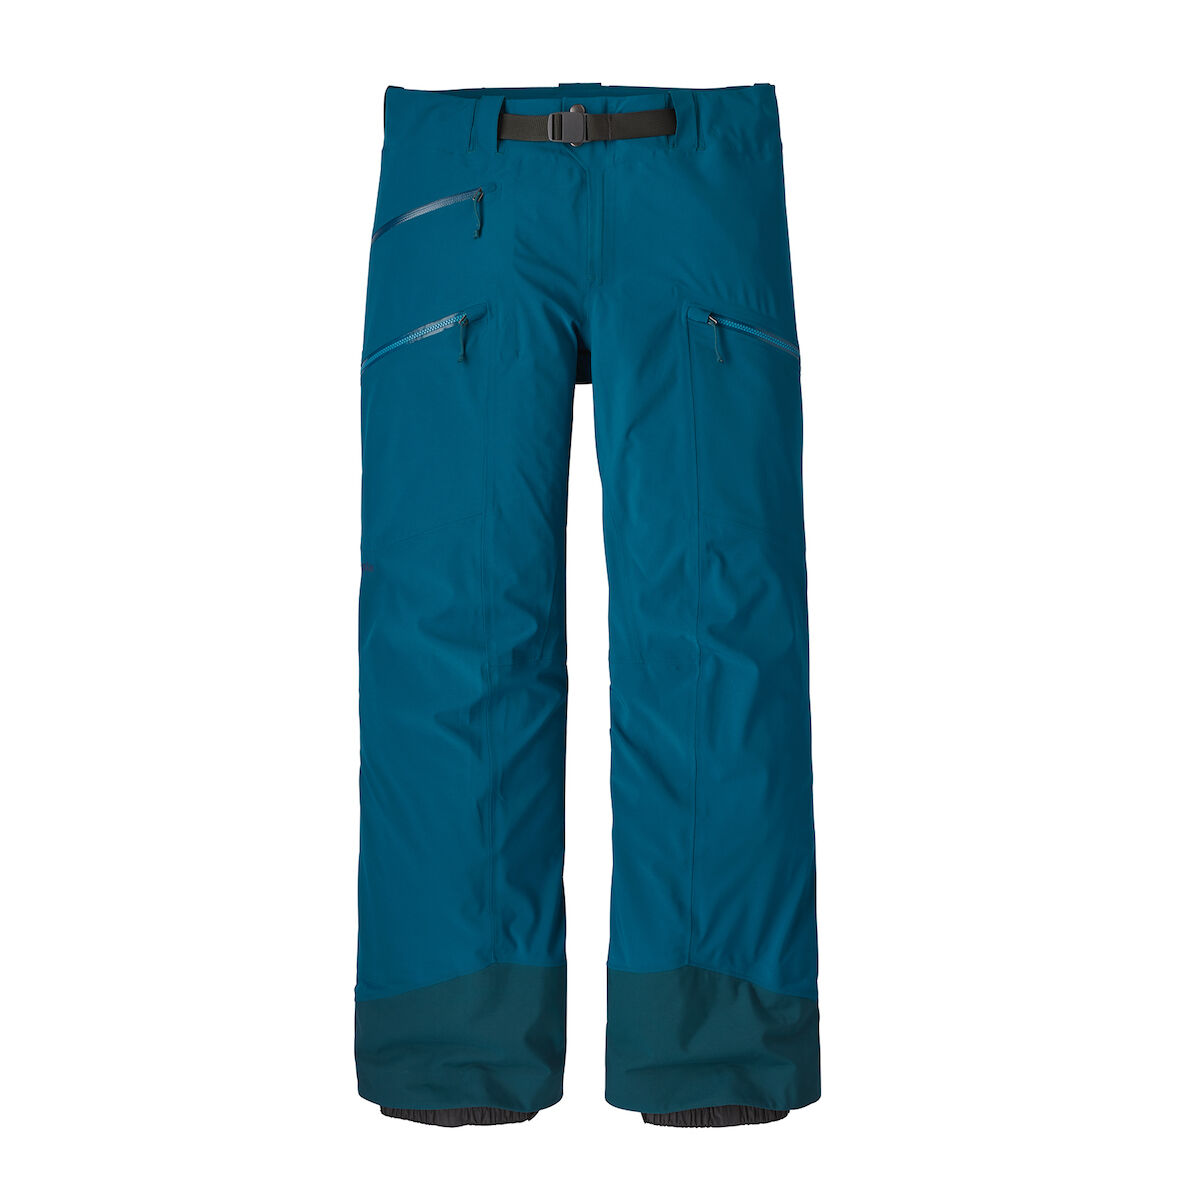 Patagonia - Descensionist Pants - Ski trousers - Men's